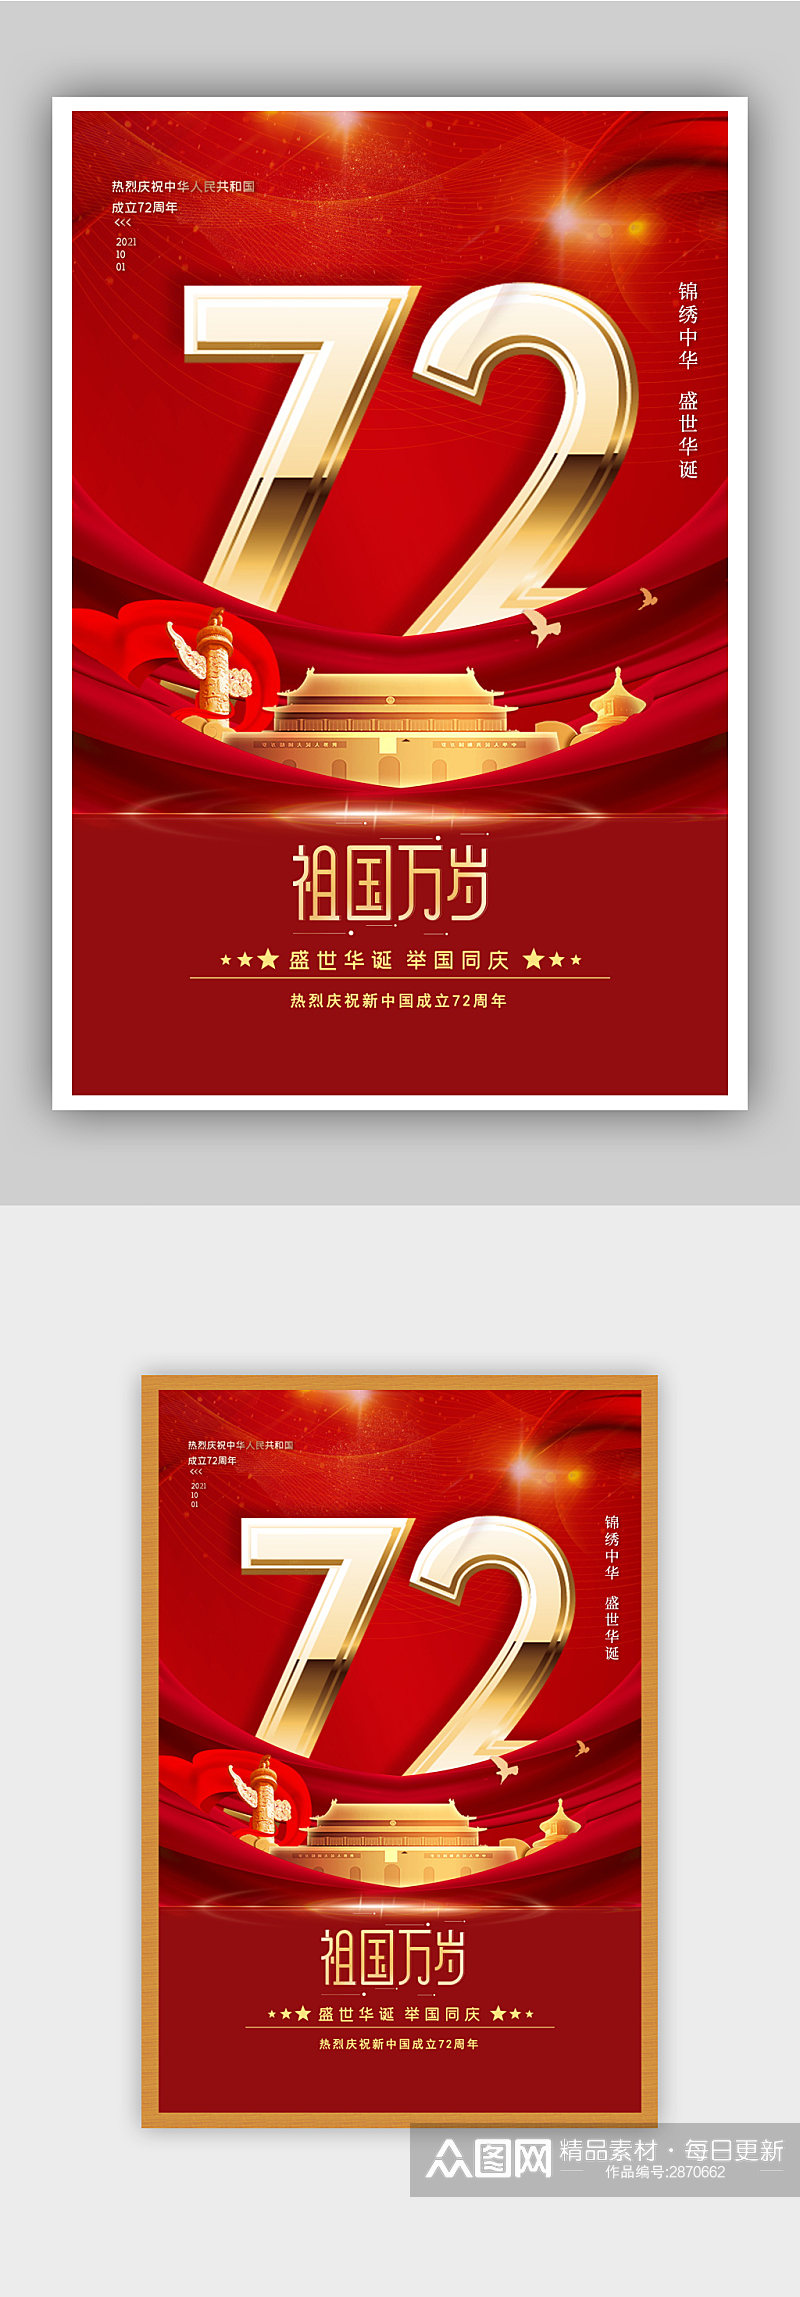 红色大气建国72周年国庆宣传海报素材